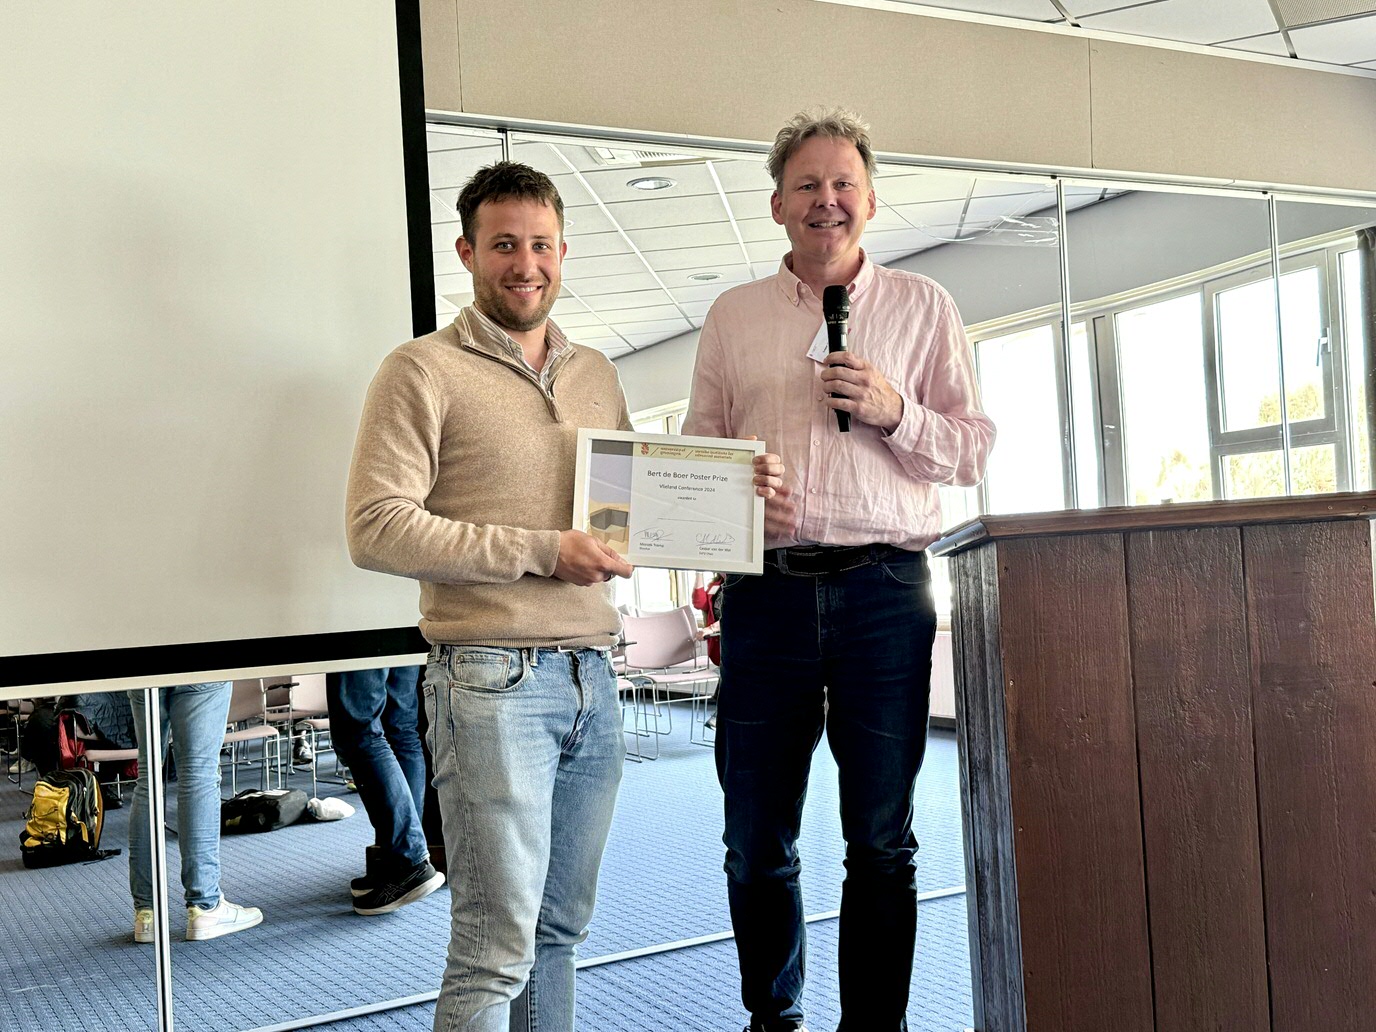 Luc Assink receiving the Bert de Boer Poster Award